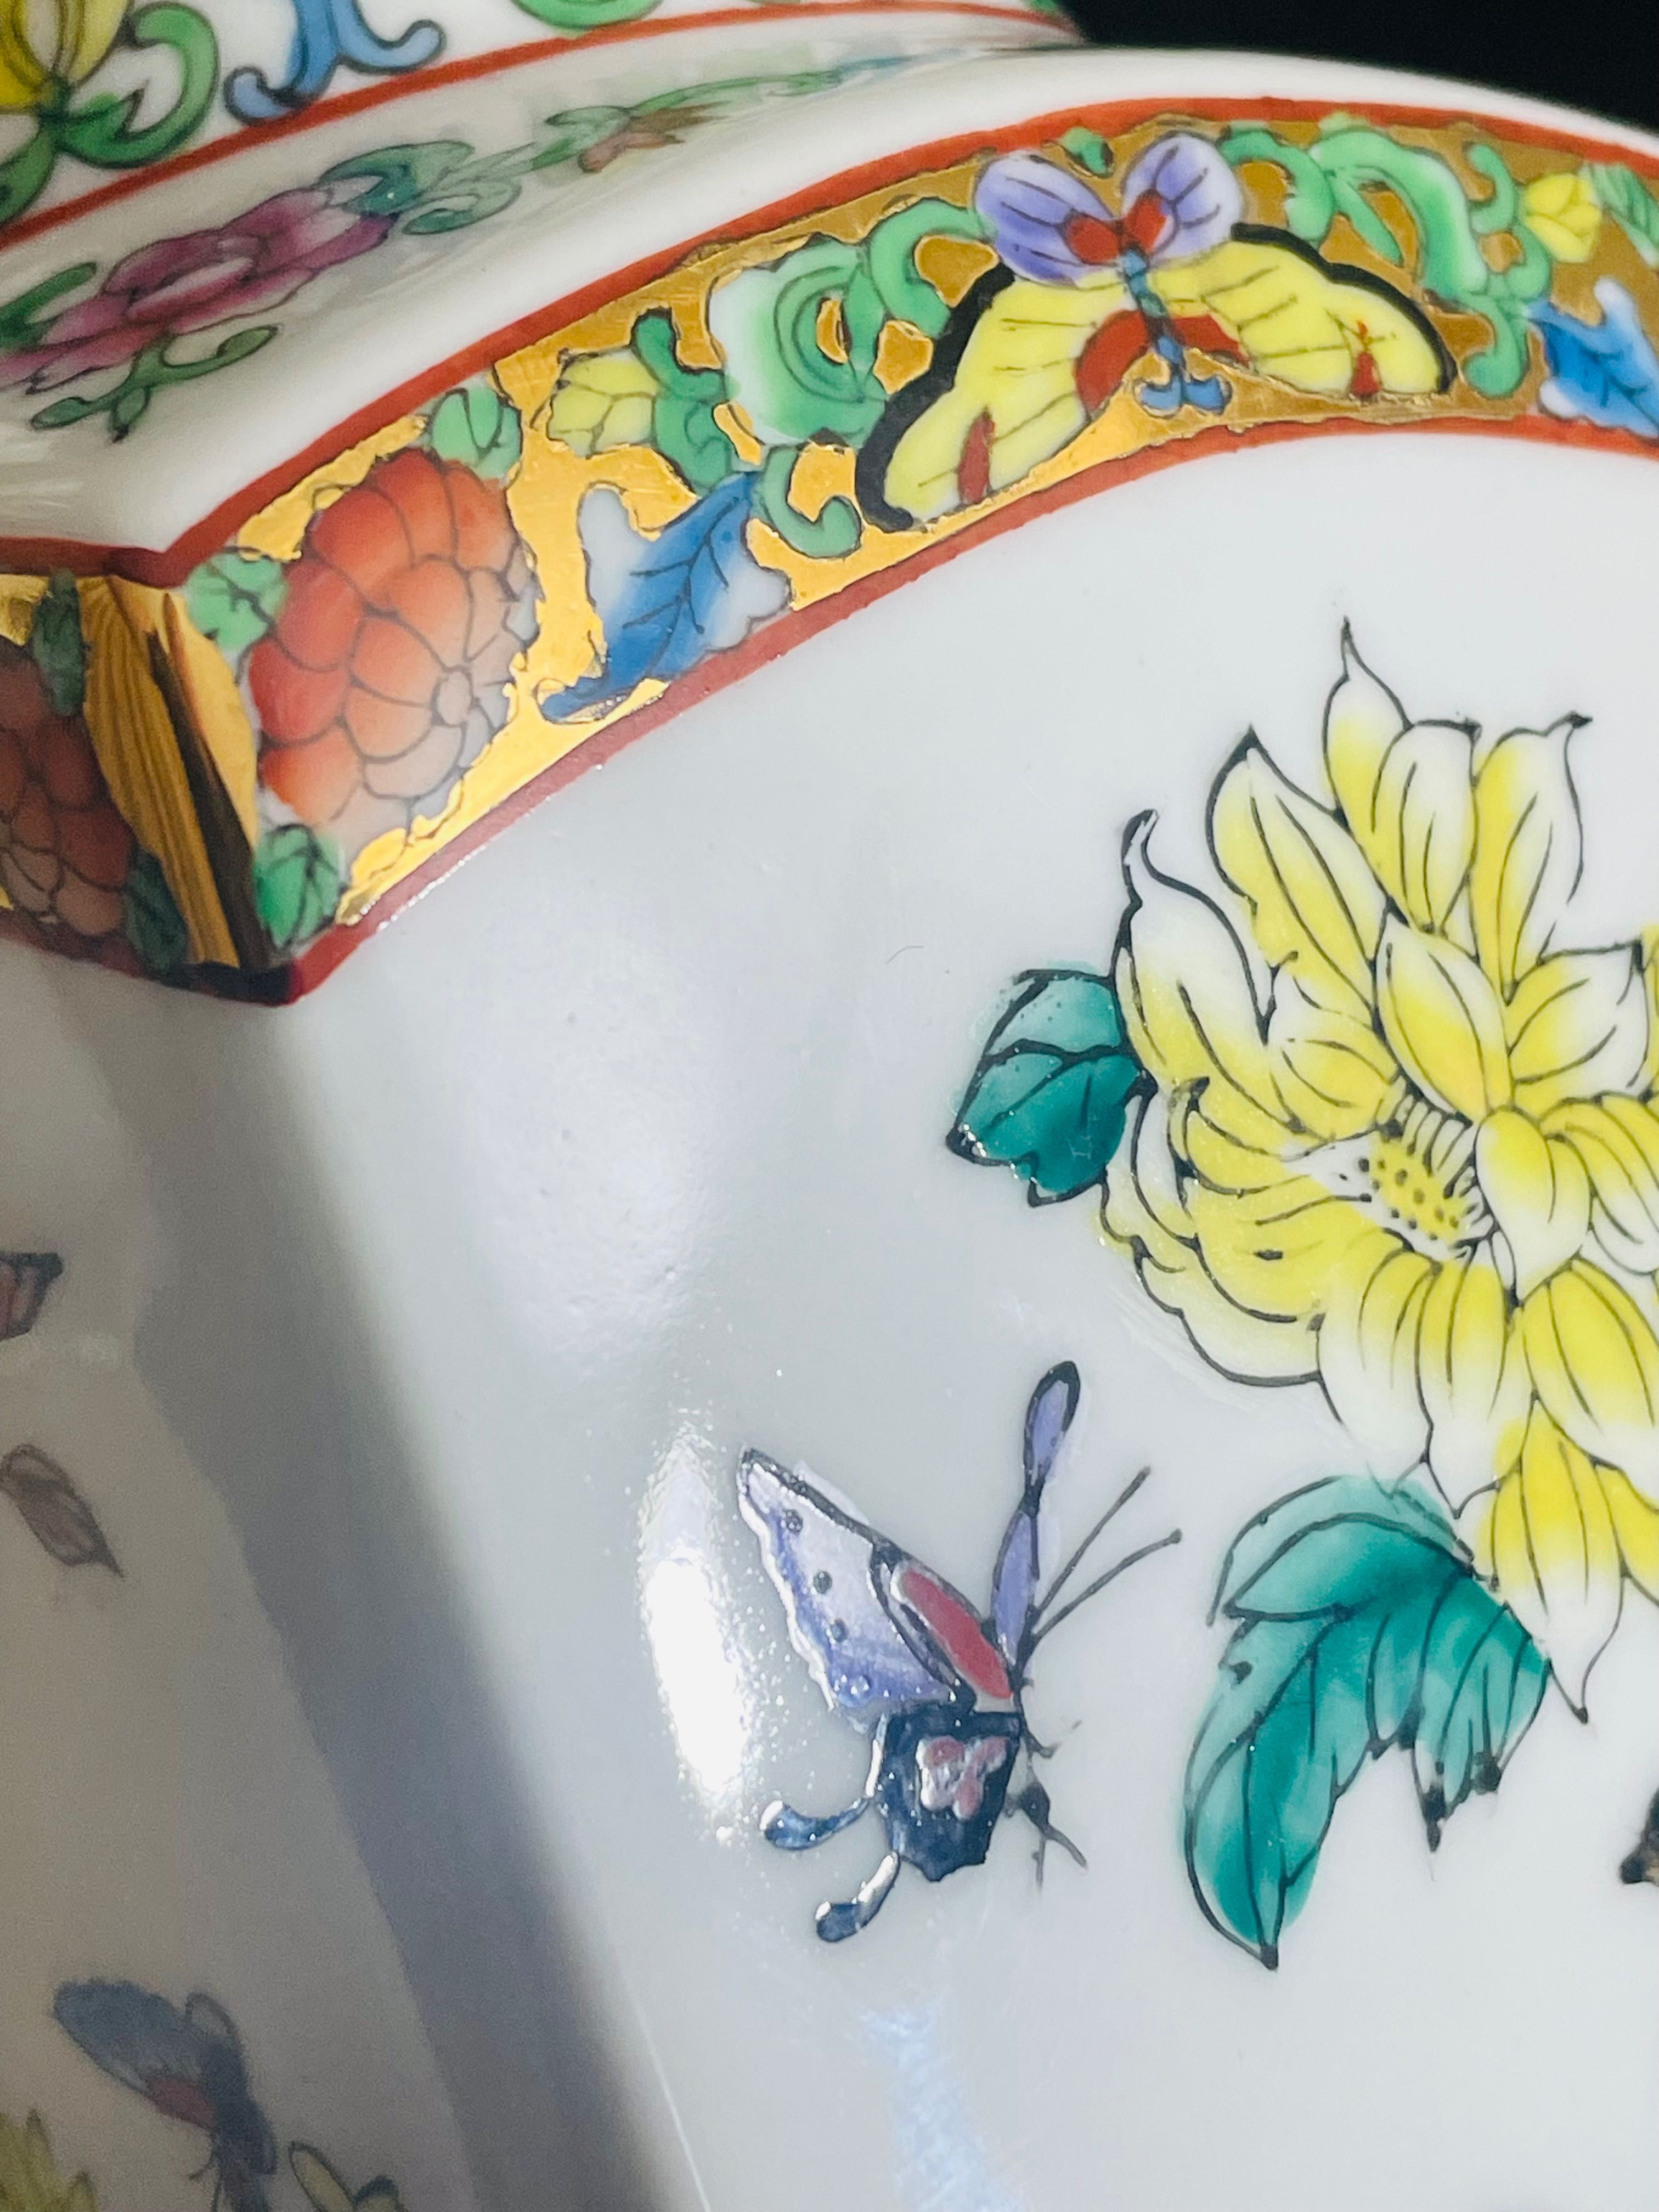 Китайска порцеланова ваза с птички и цветя, планини, златен обков